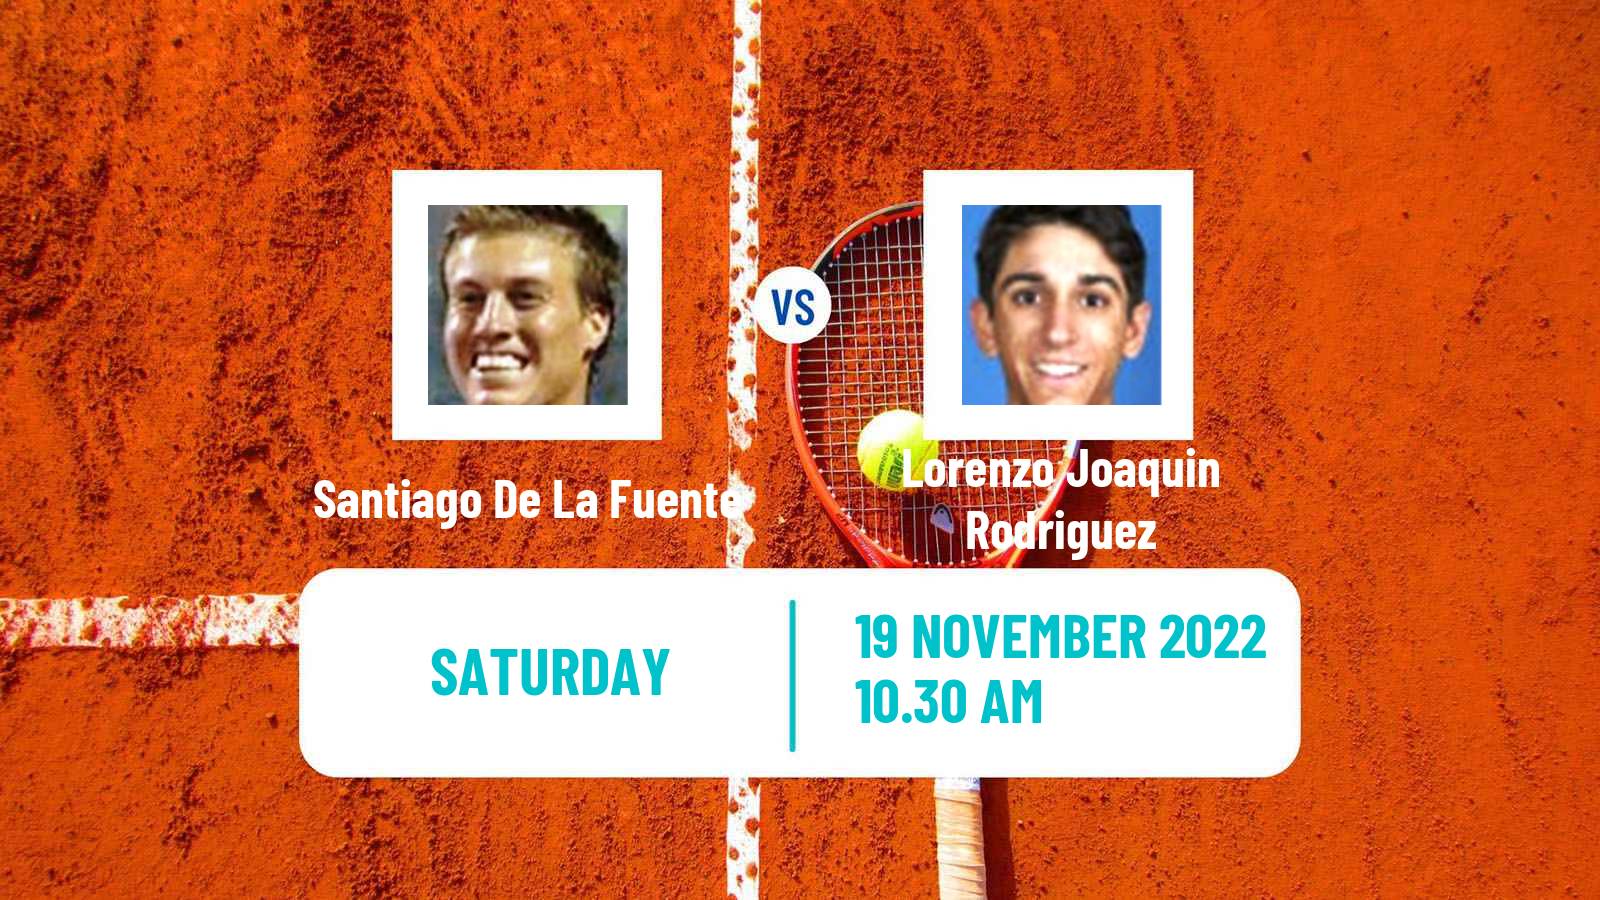 Tennis ITF Tournaments Santiago De La Fuente - Lorenzo Joaquin Rodriguez